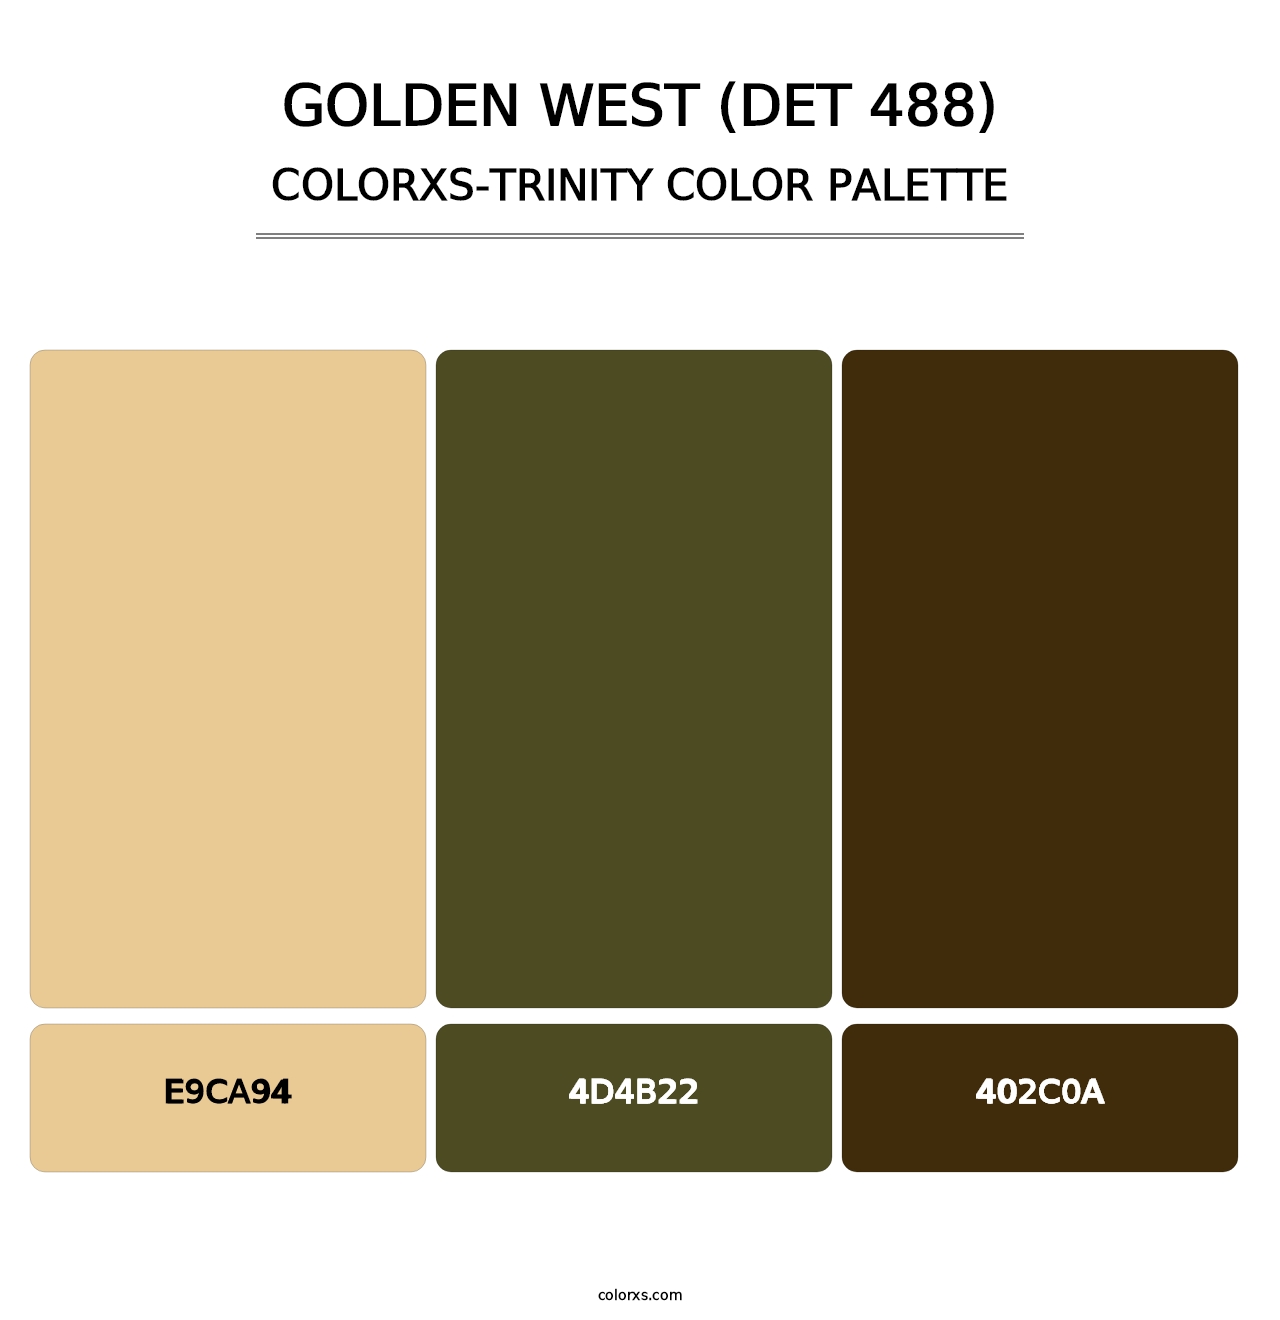 Golden West (DET 488) - Colorxs Trinity Palette